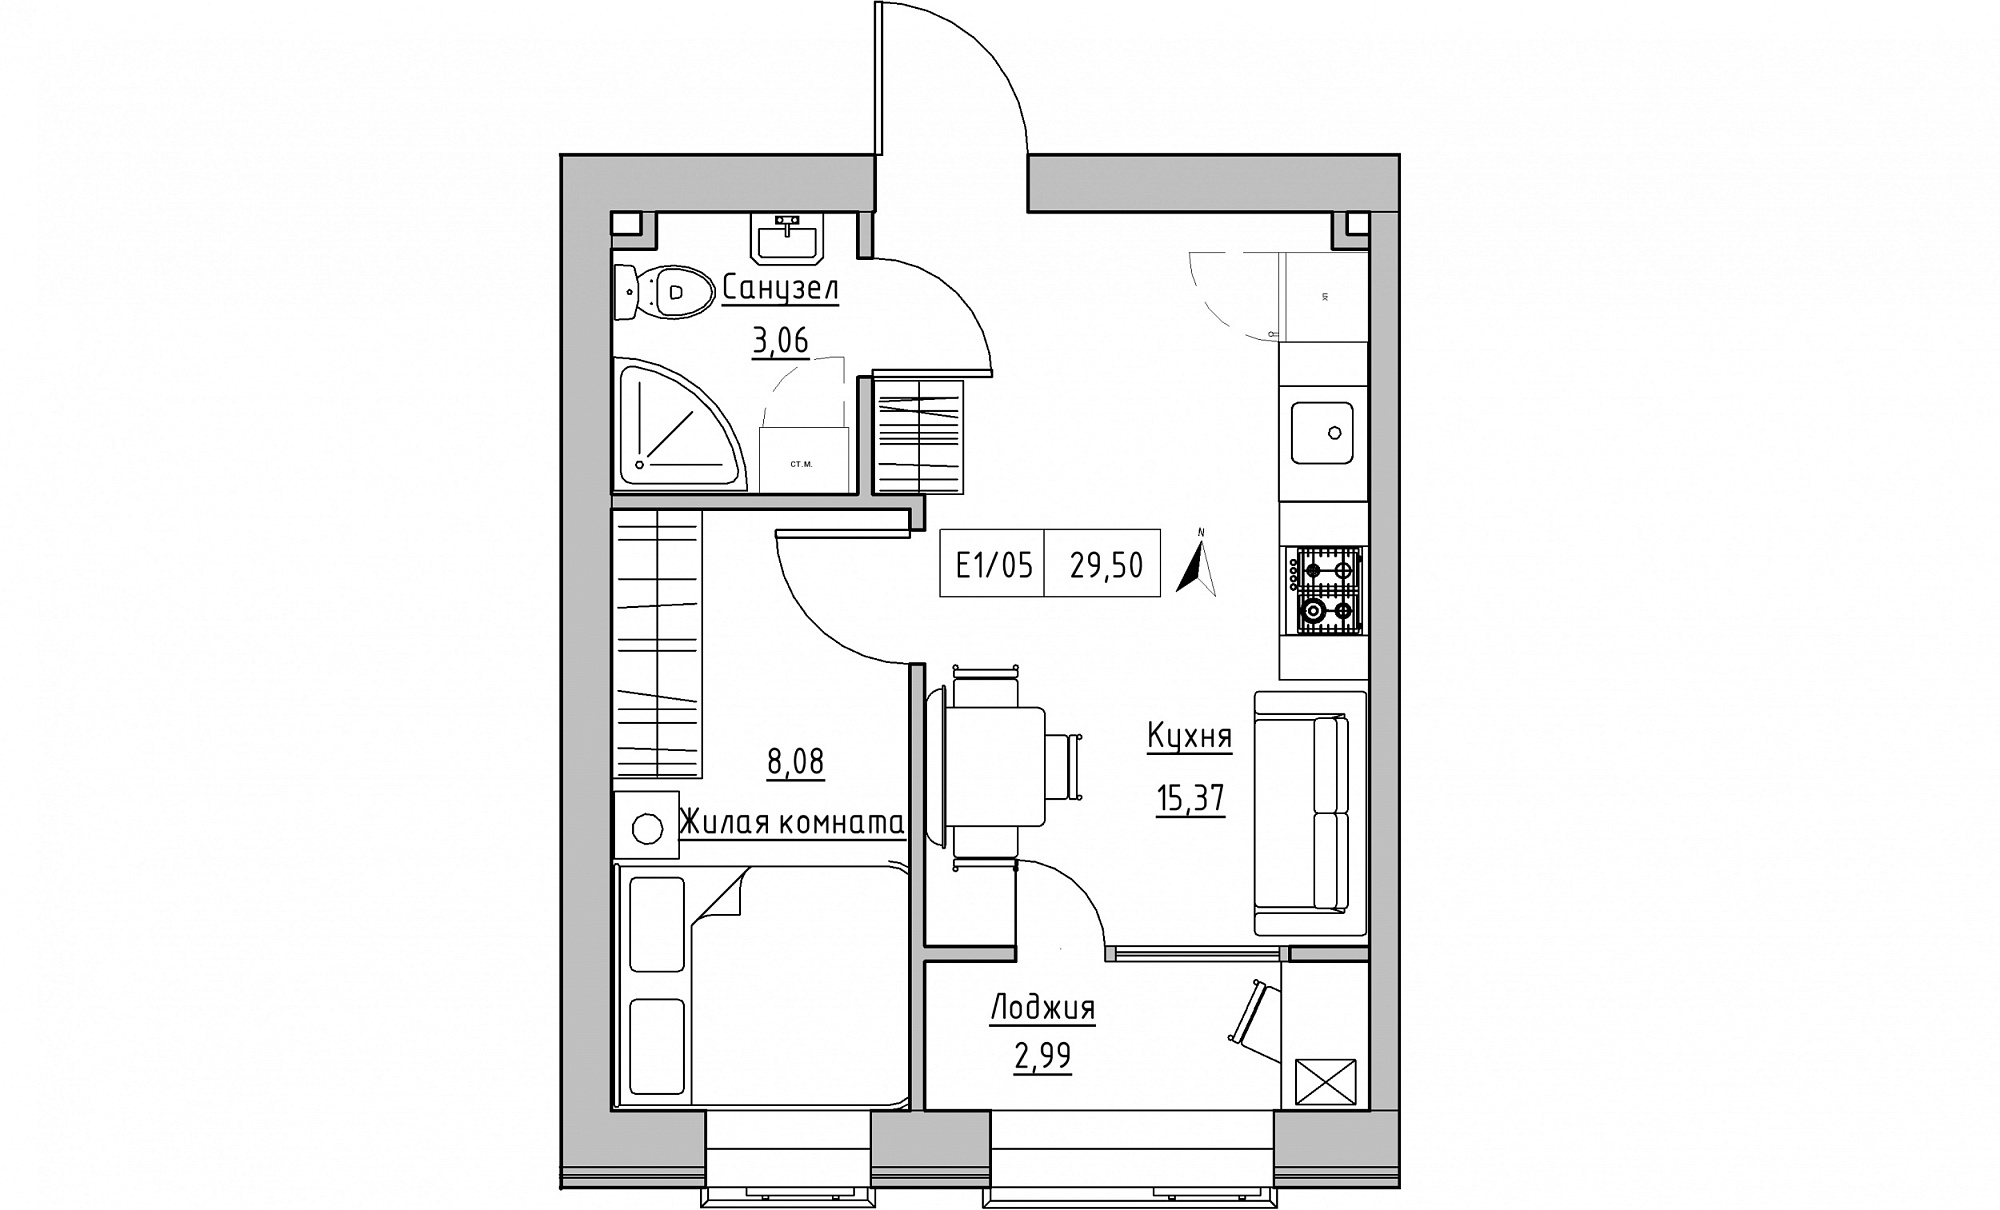 Планування 1-к квартира площею 29.5м2, KS-015-04/0010.